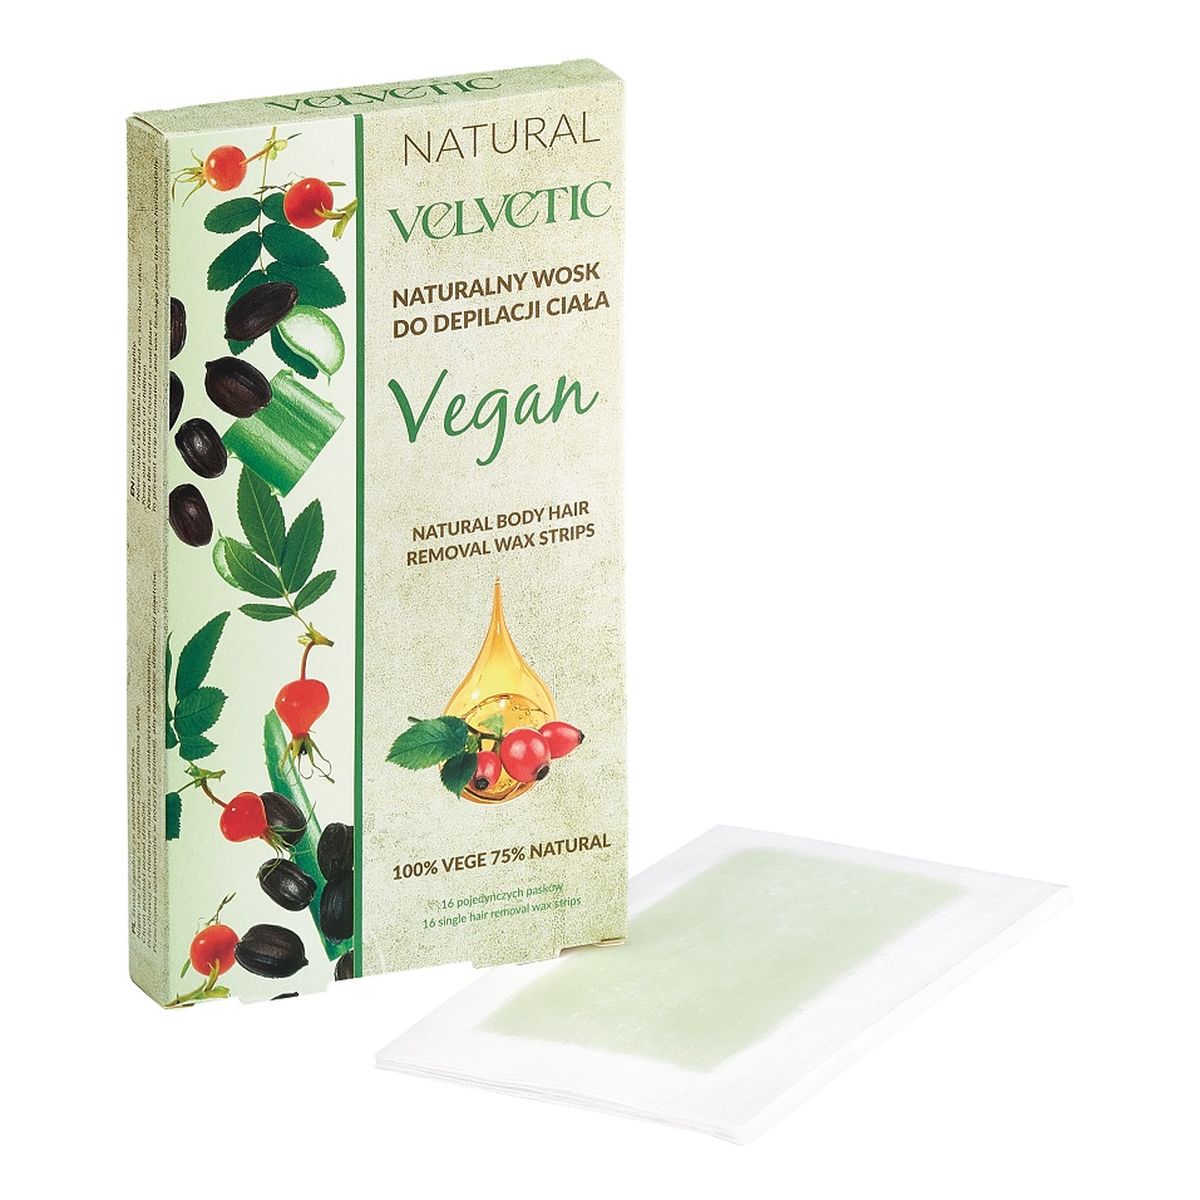 Velvetic Vegan naturalny wosk do depilacji ciała 16szt.